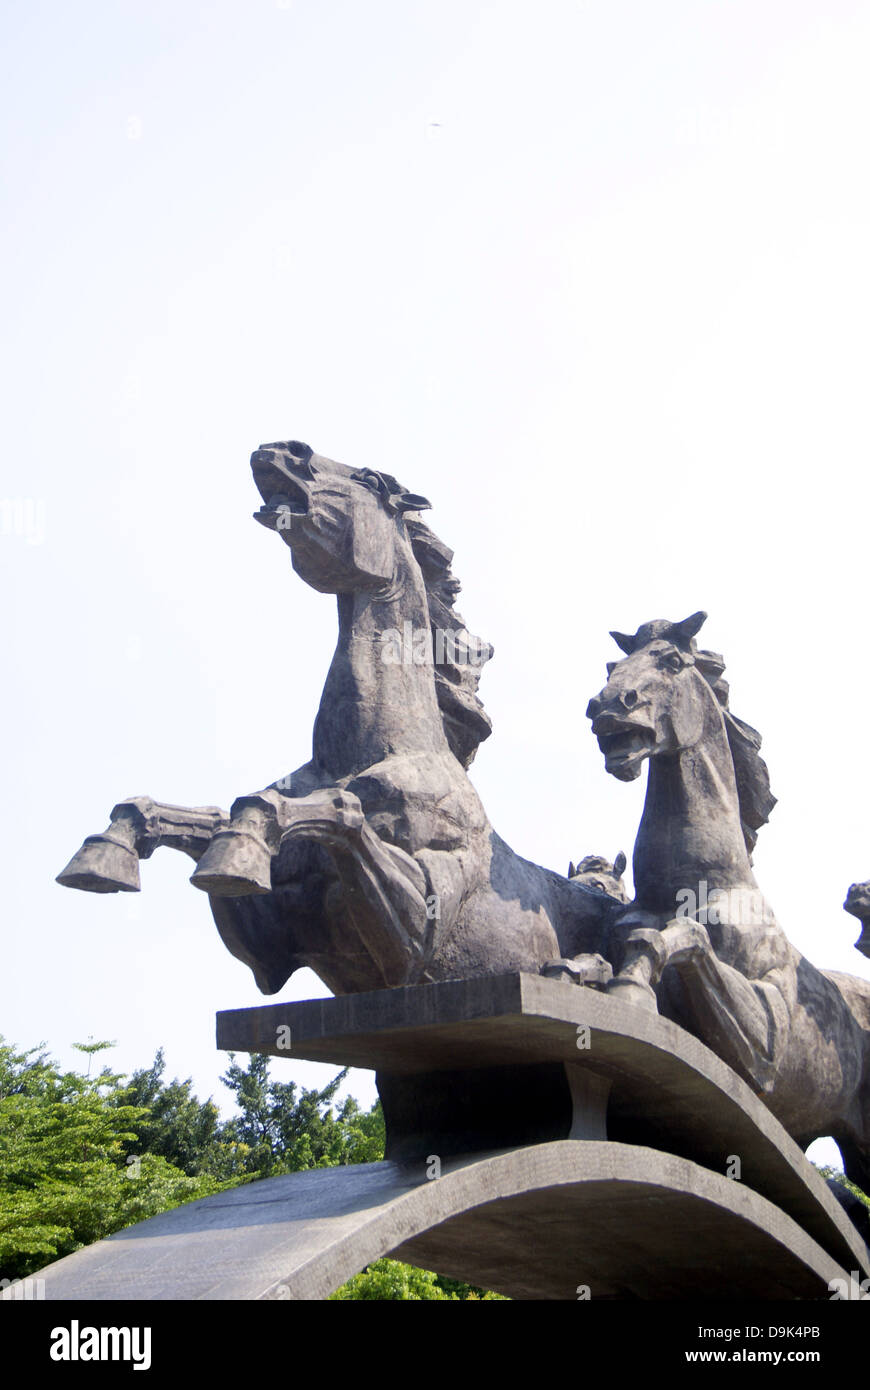 Shenzhen Chine : horse sculpture. Ganoderma lucidum park à Shenzhen, il y a quelques belles sculptures de chevaux, est un beau paysage Banque D'Images